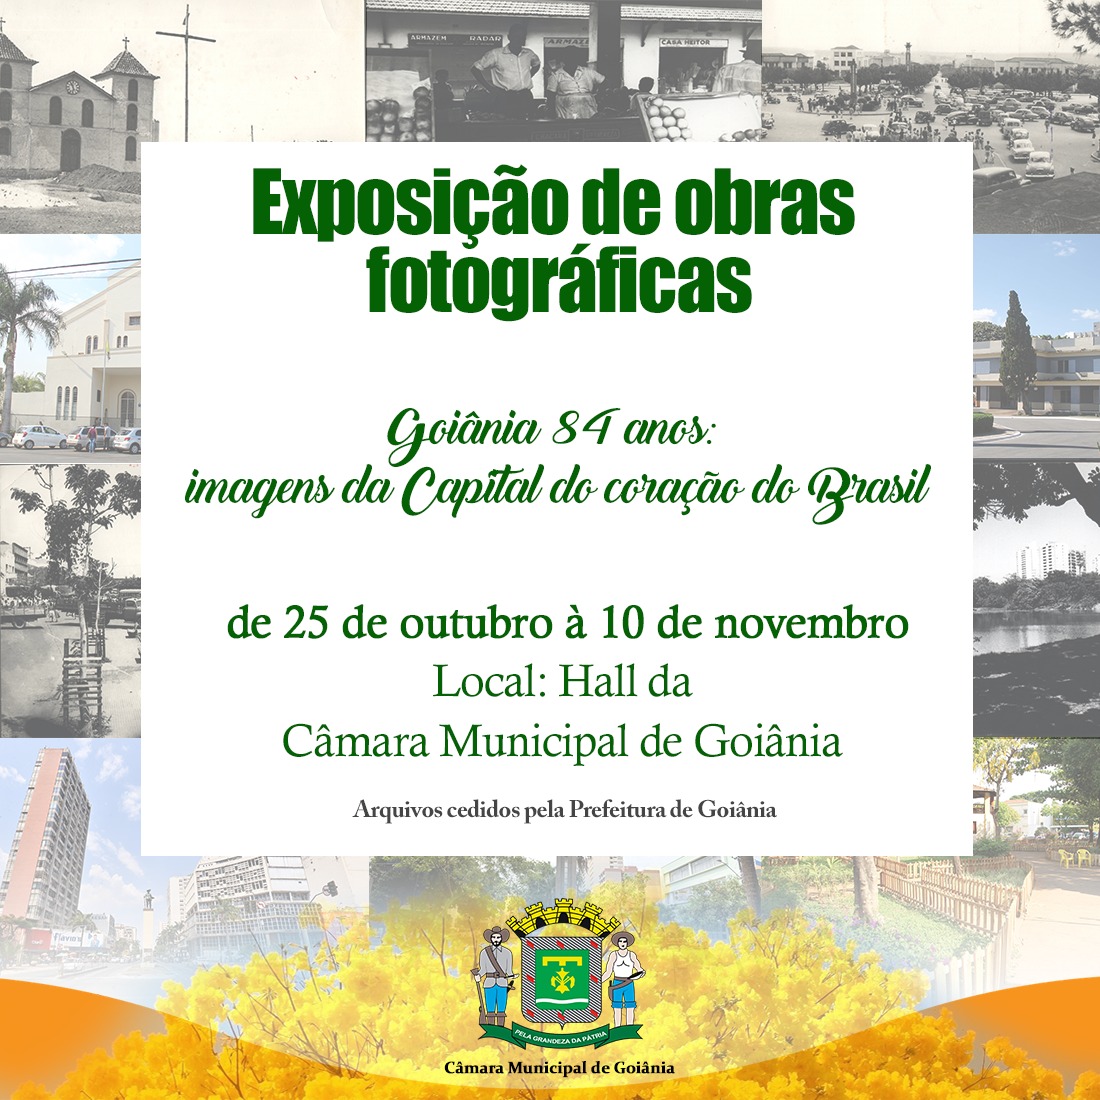 Exposição apresenta fotos antigas e atuais dos principais locais de Goiânia